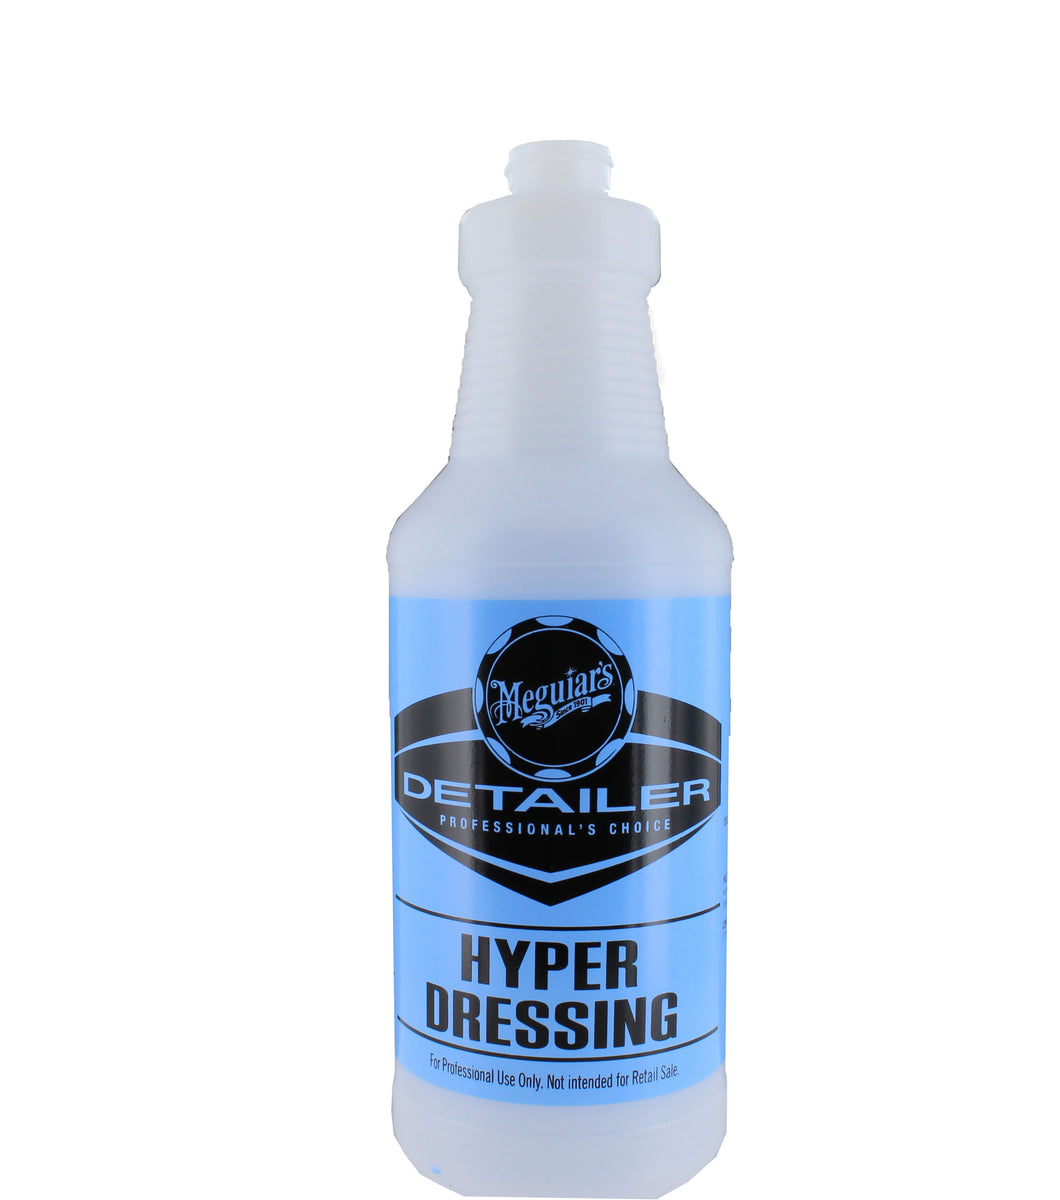 Hyper dressing Renovador Meguiars 946ml